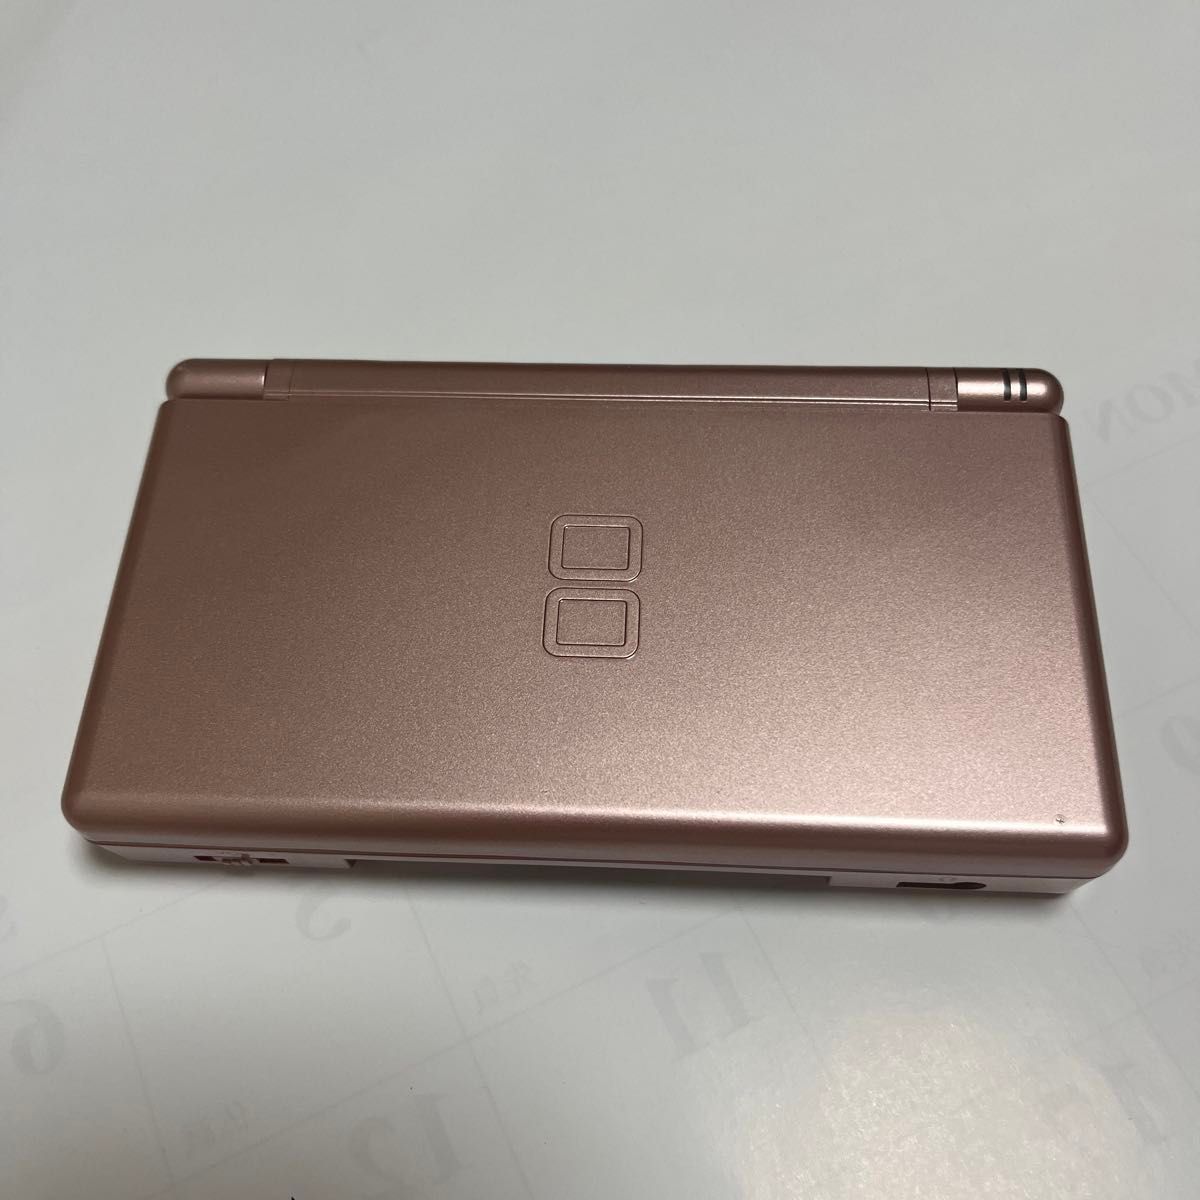 ニンテンドー DS Lite 本体